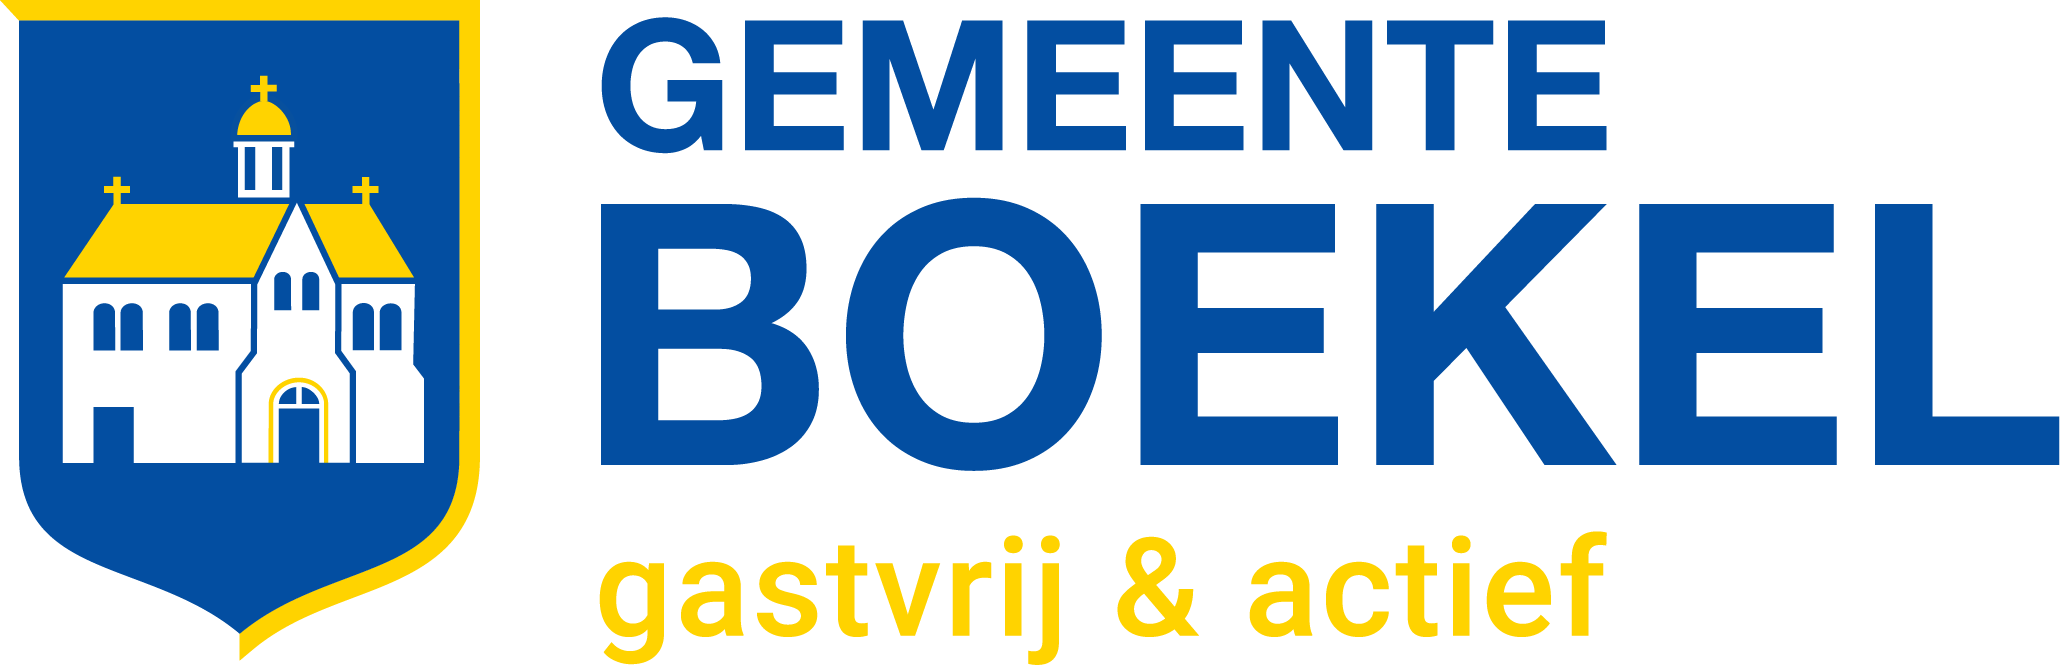 Logo Gemeente Boekel gastvrij & actief